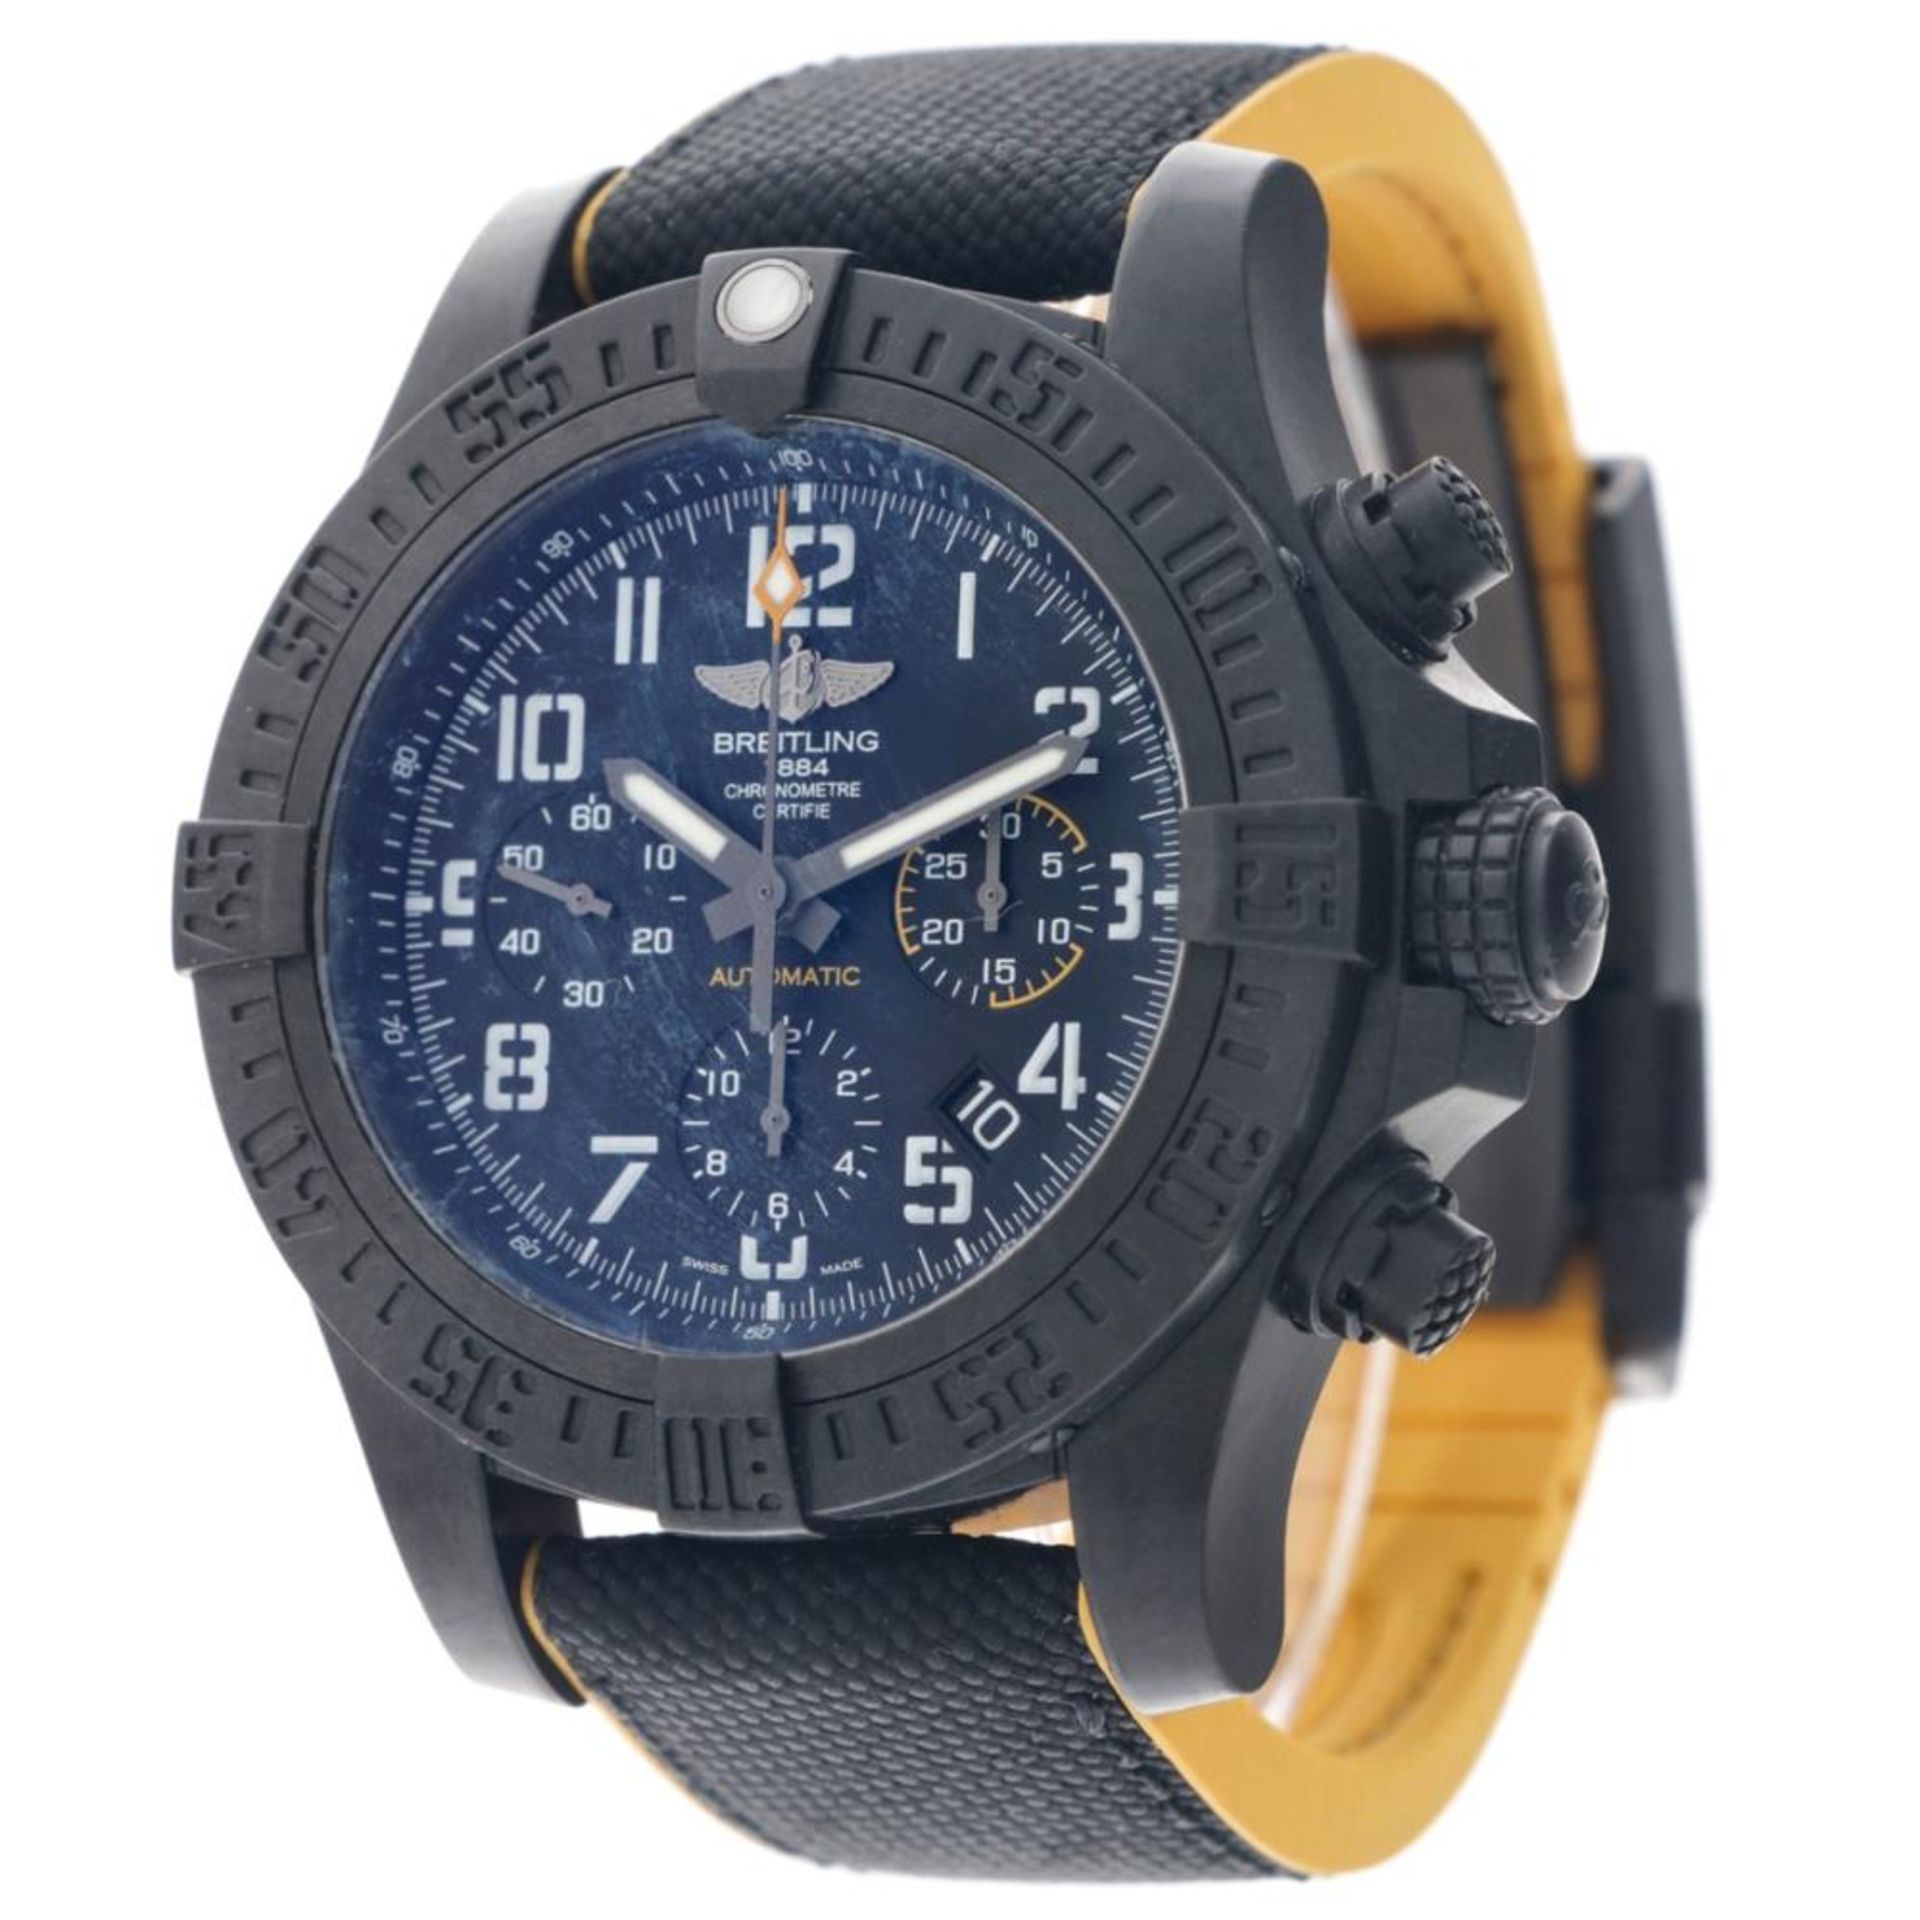 Breitling Avenger Hurricane XB0180E4 - Men's watch - 2019. - Image 4 of 12